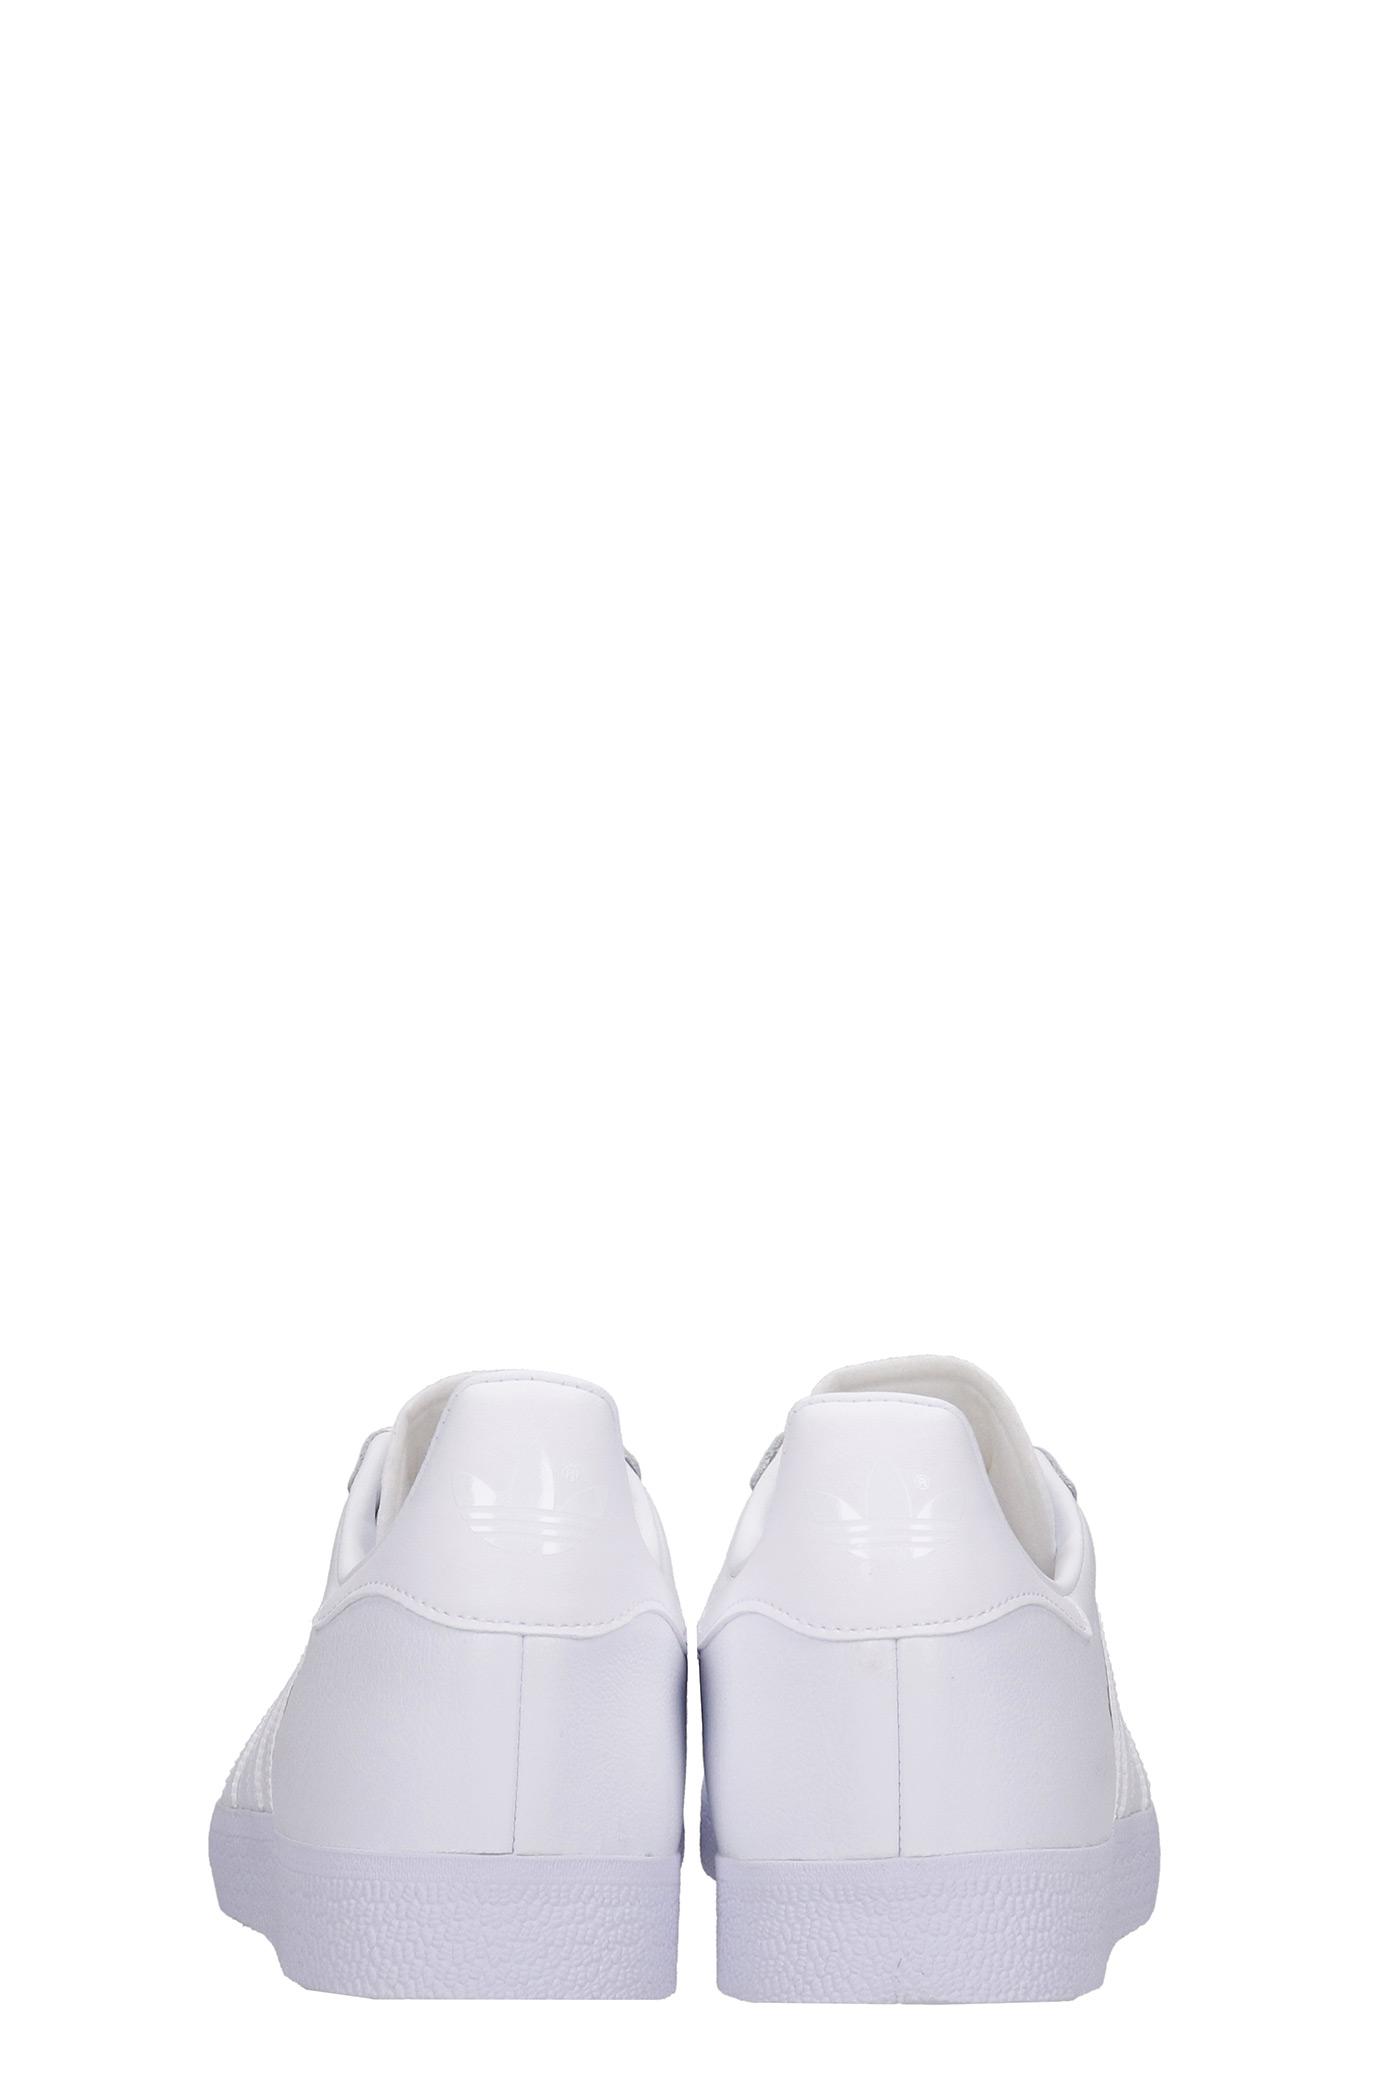 adidas Gazelle Sneakers In White Leather for Men | Lyst تفتيح جفن العين العلوي